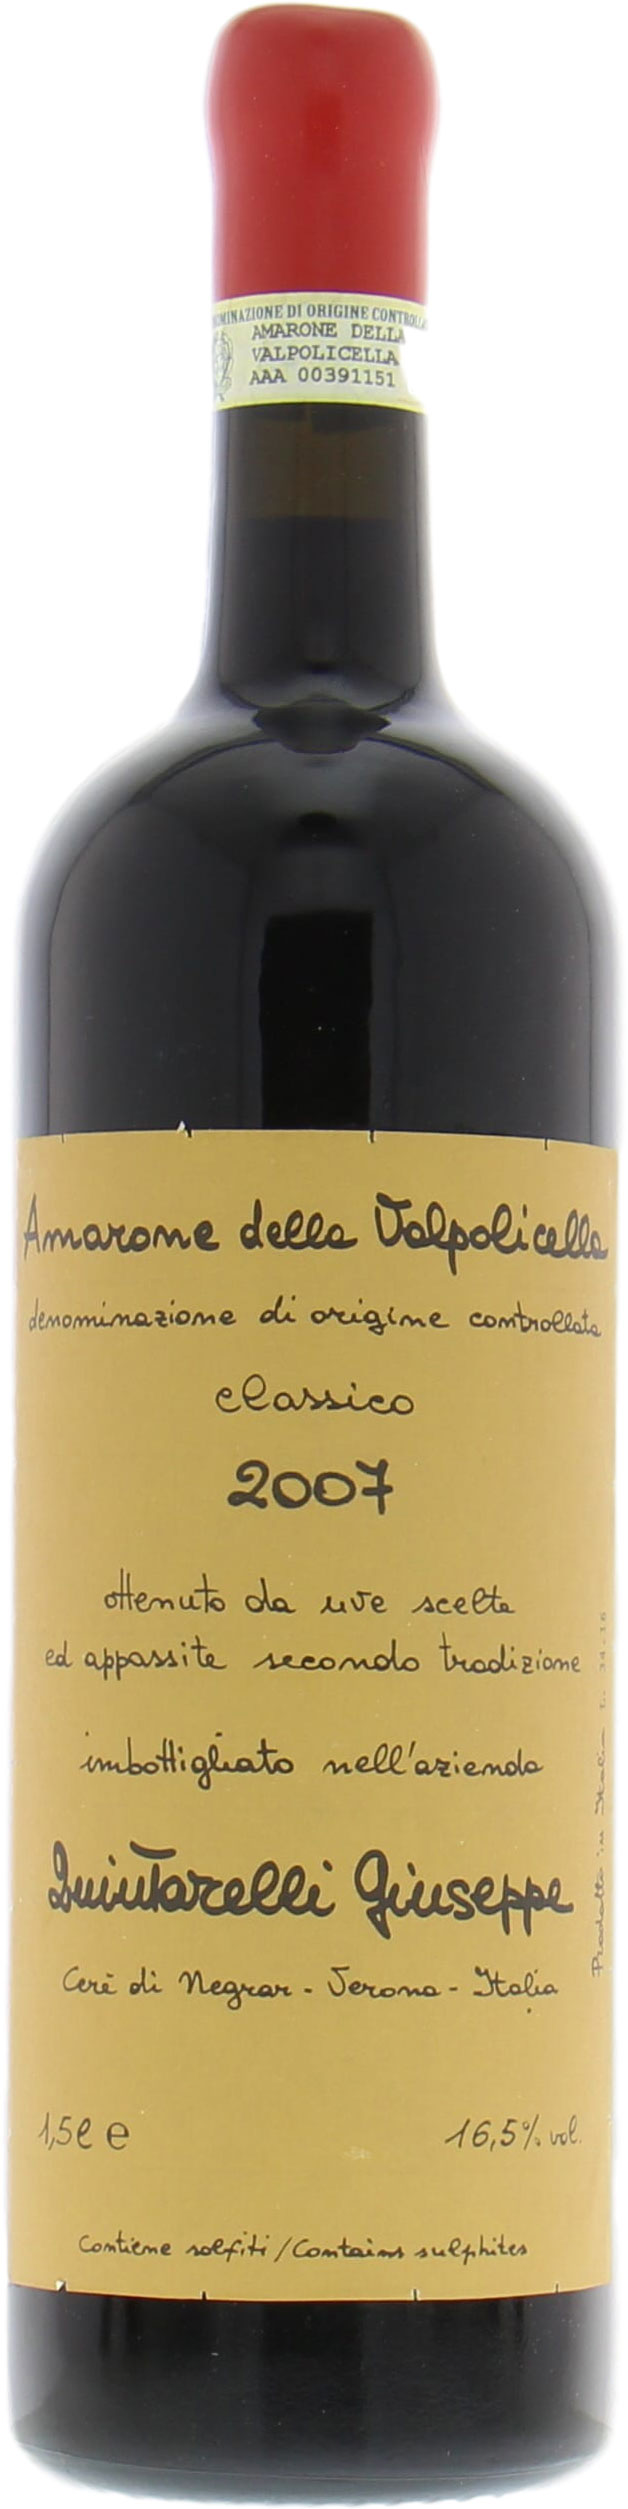 Quintarelli  - Amarone della Valpolicella Classico 2007 Perfect